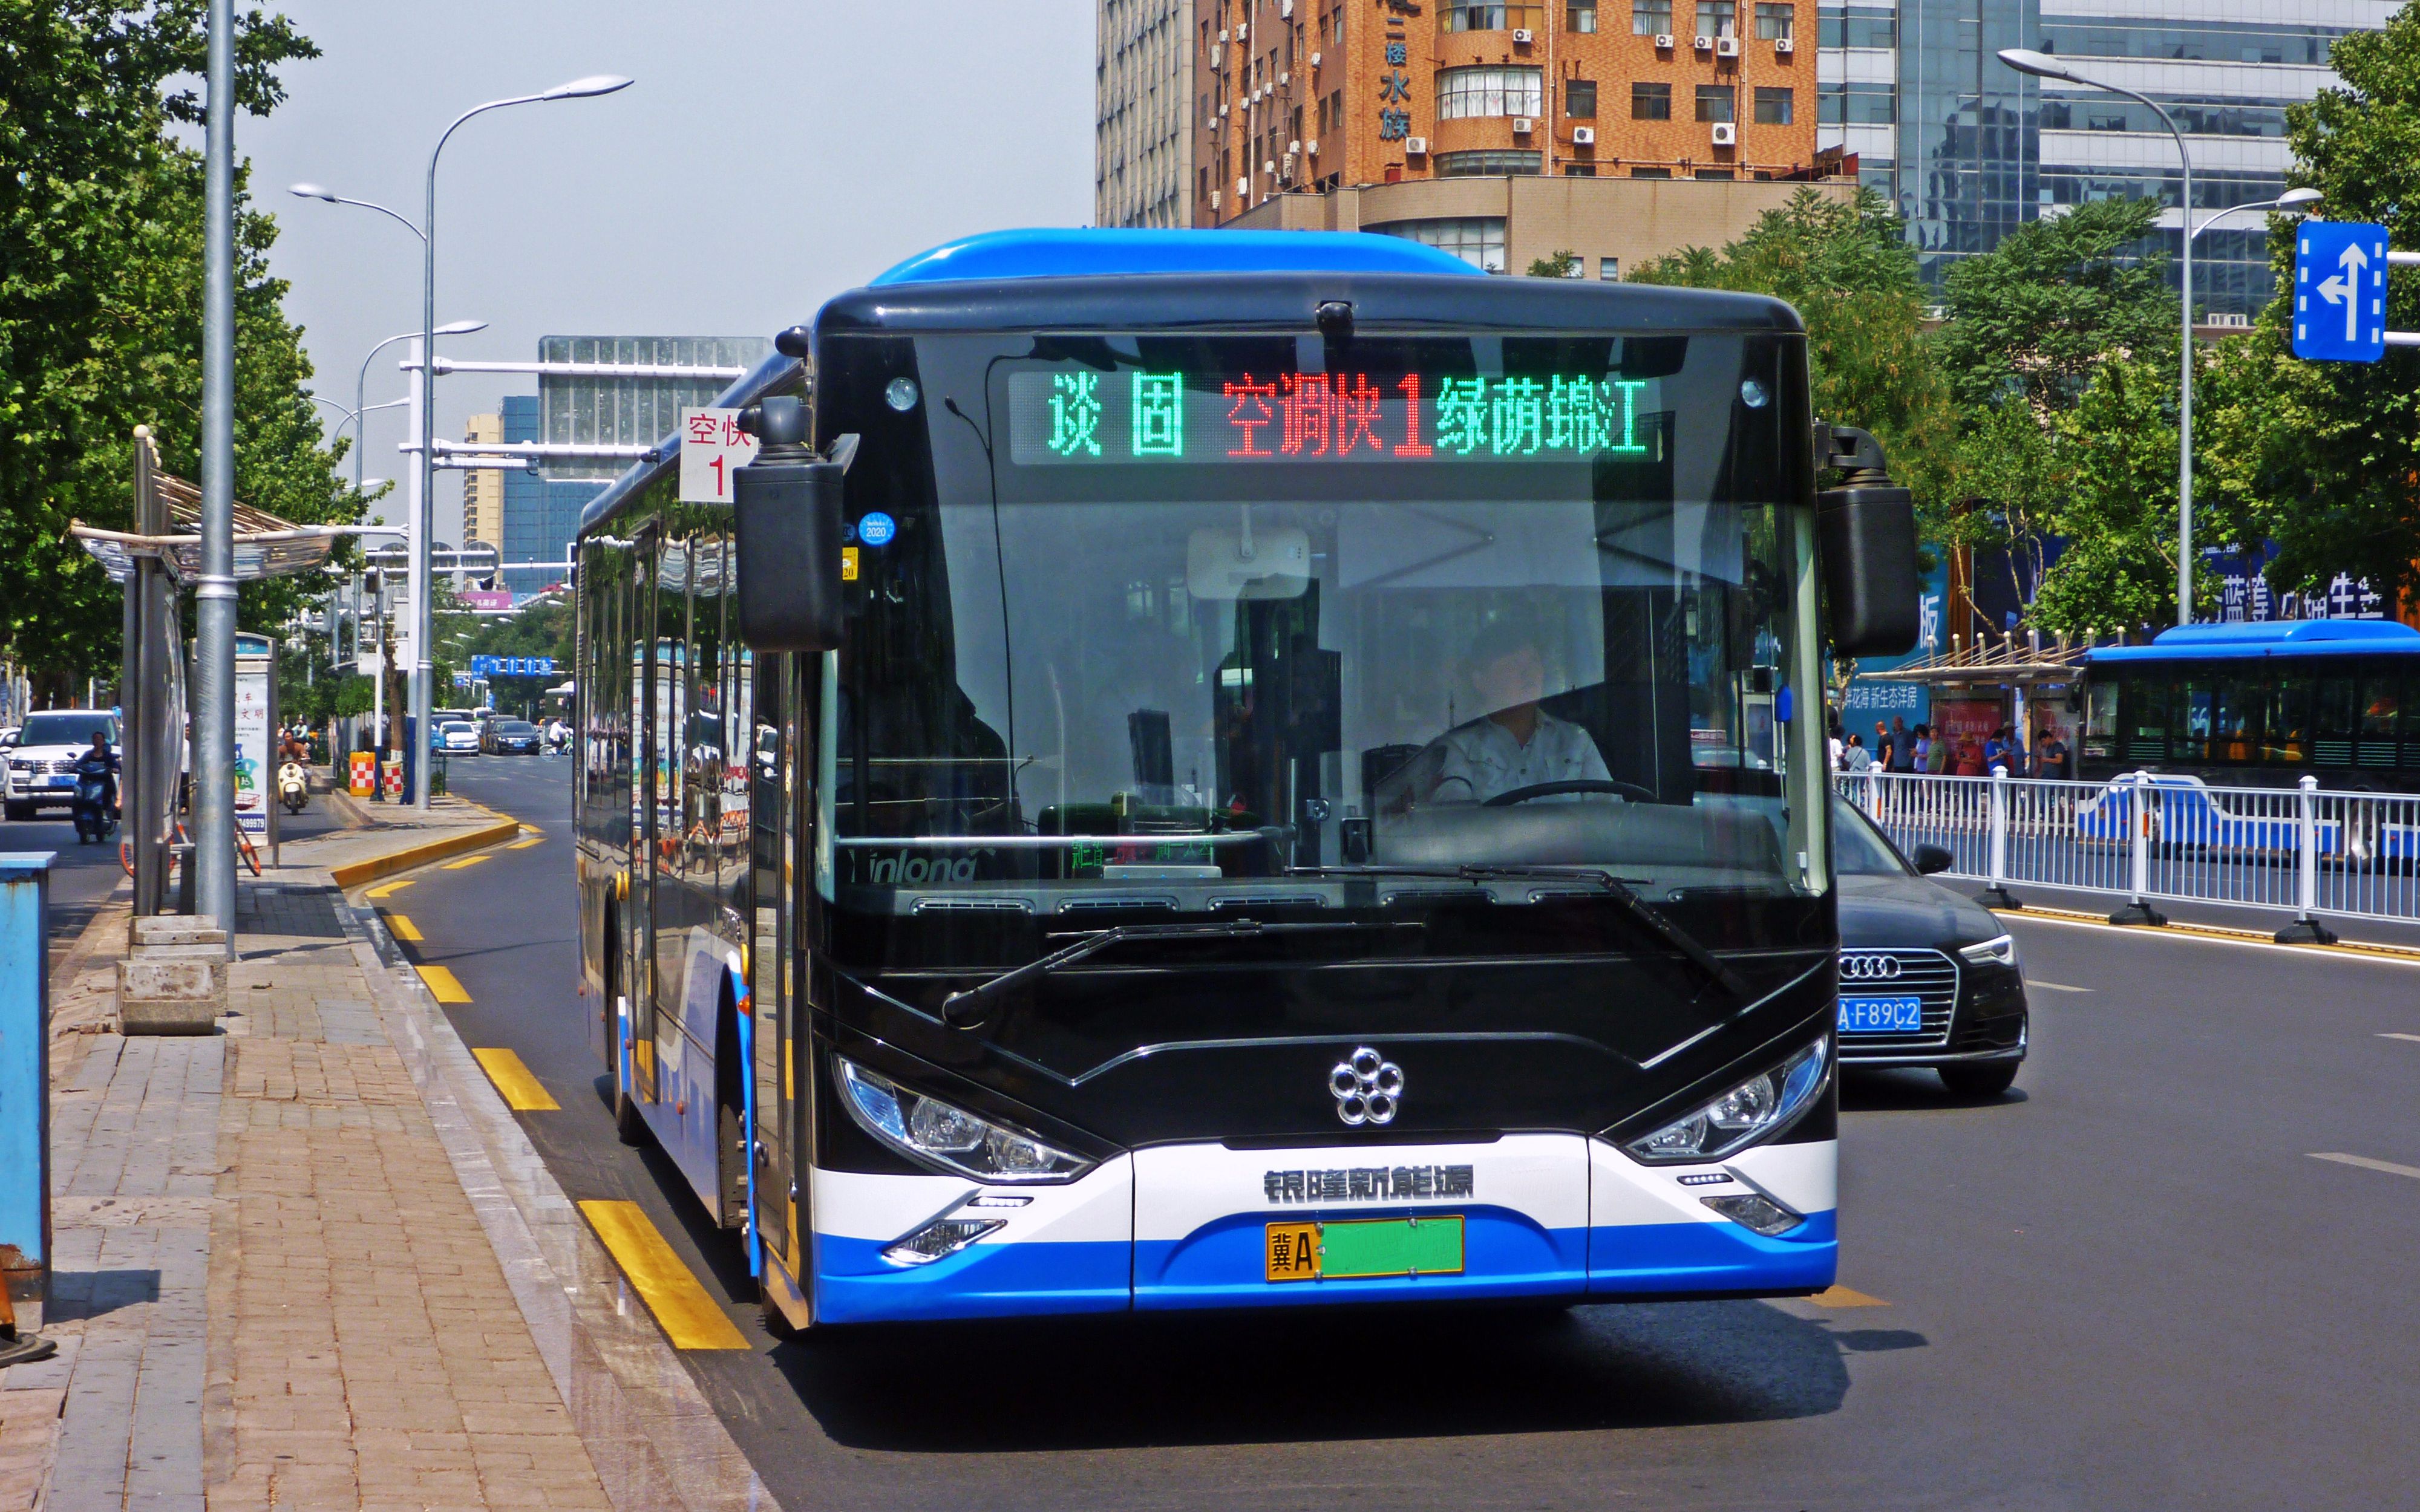 石家庄公交logo图片